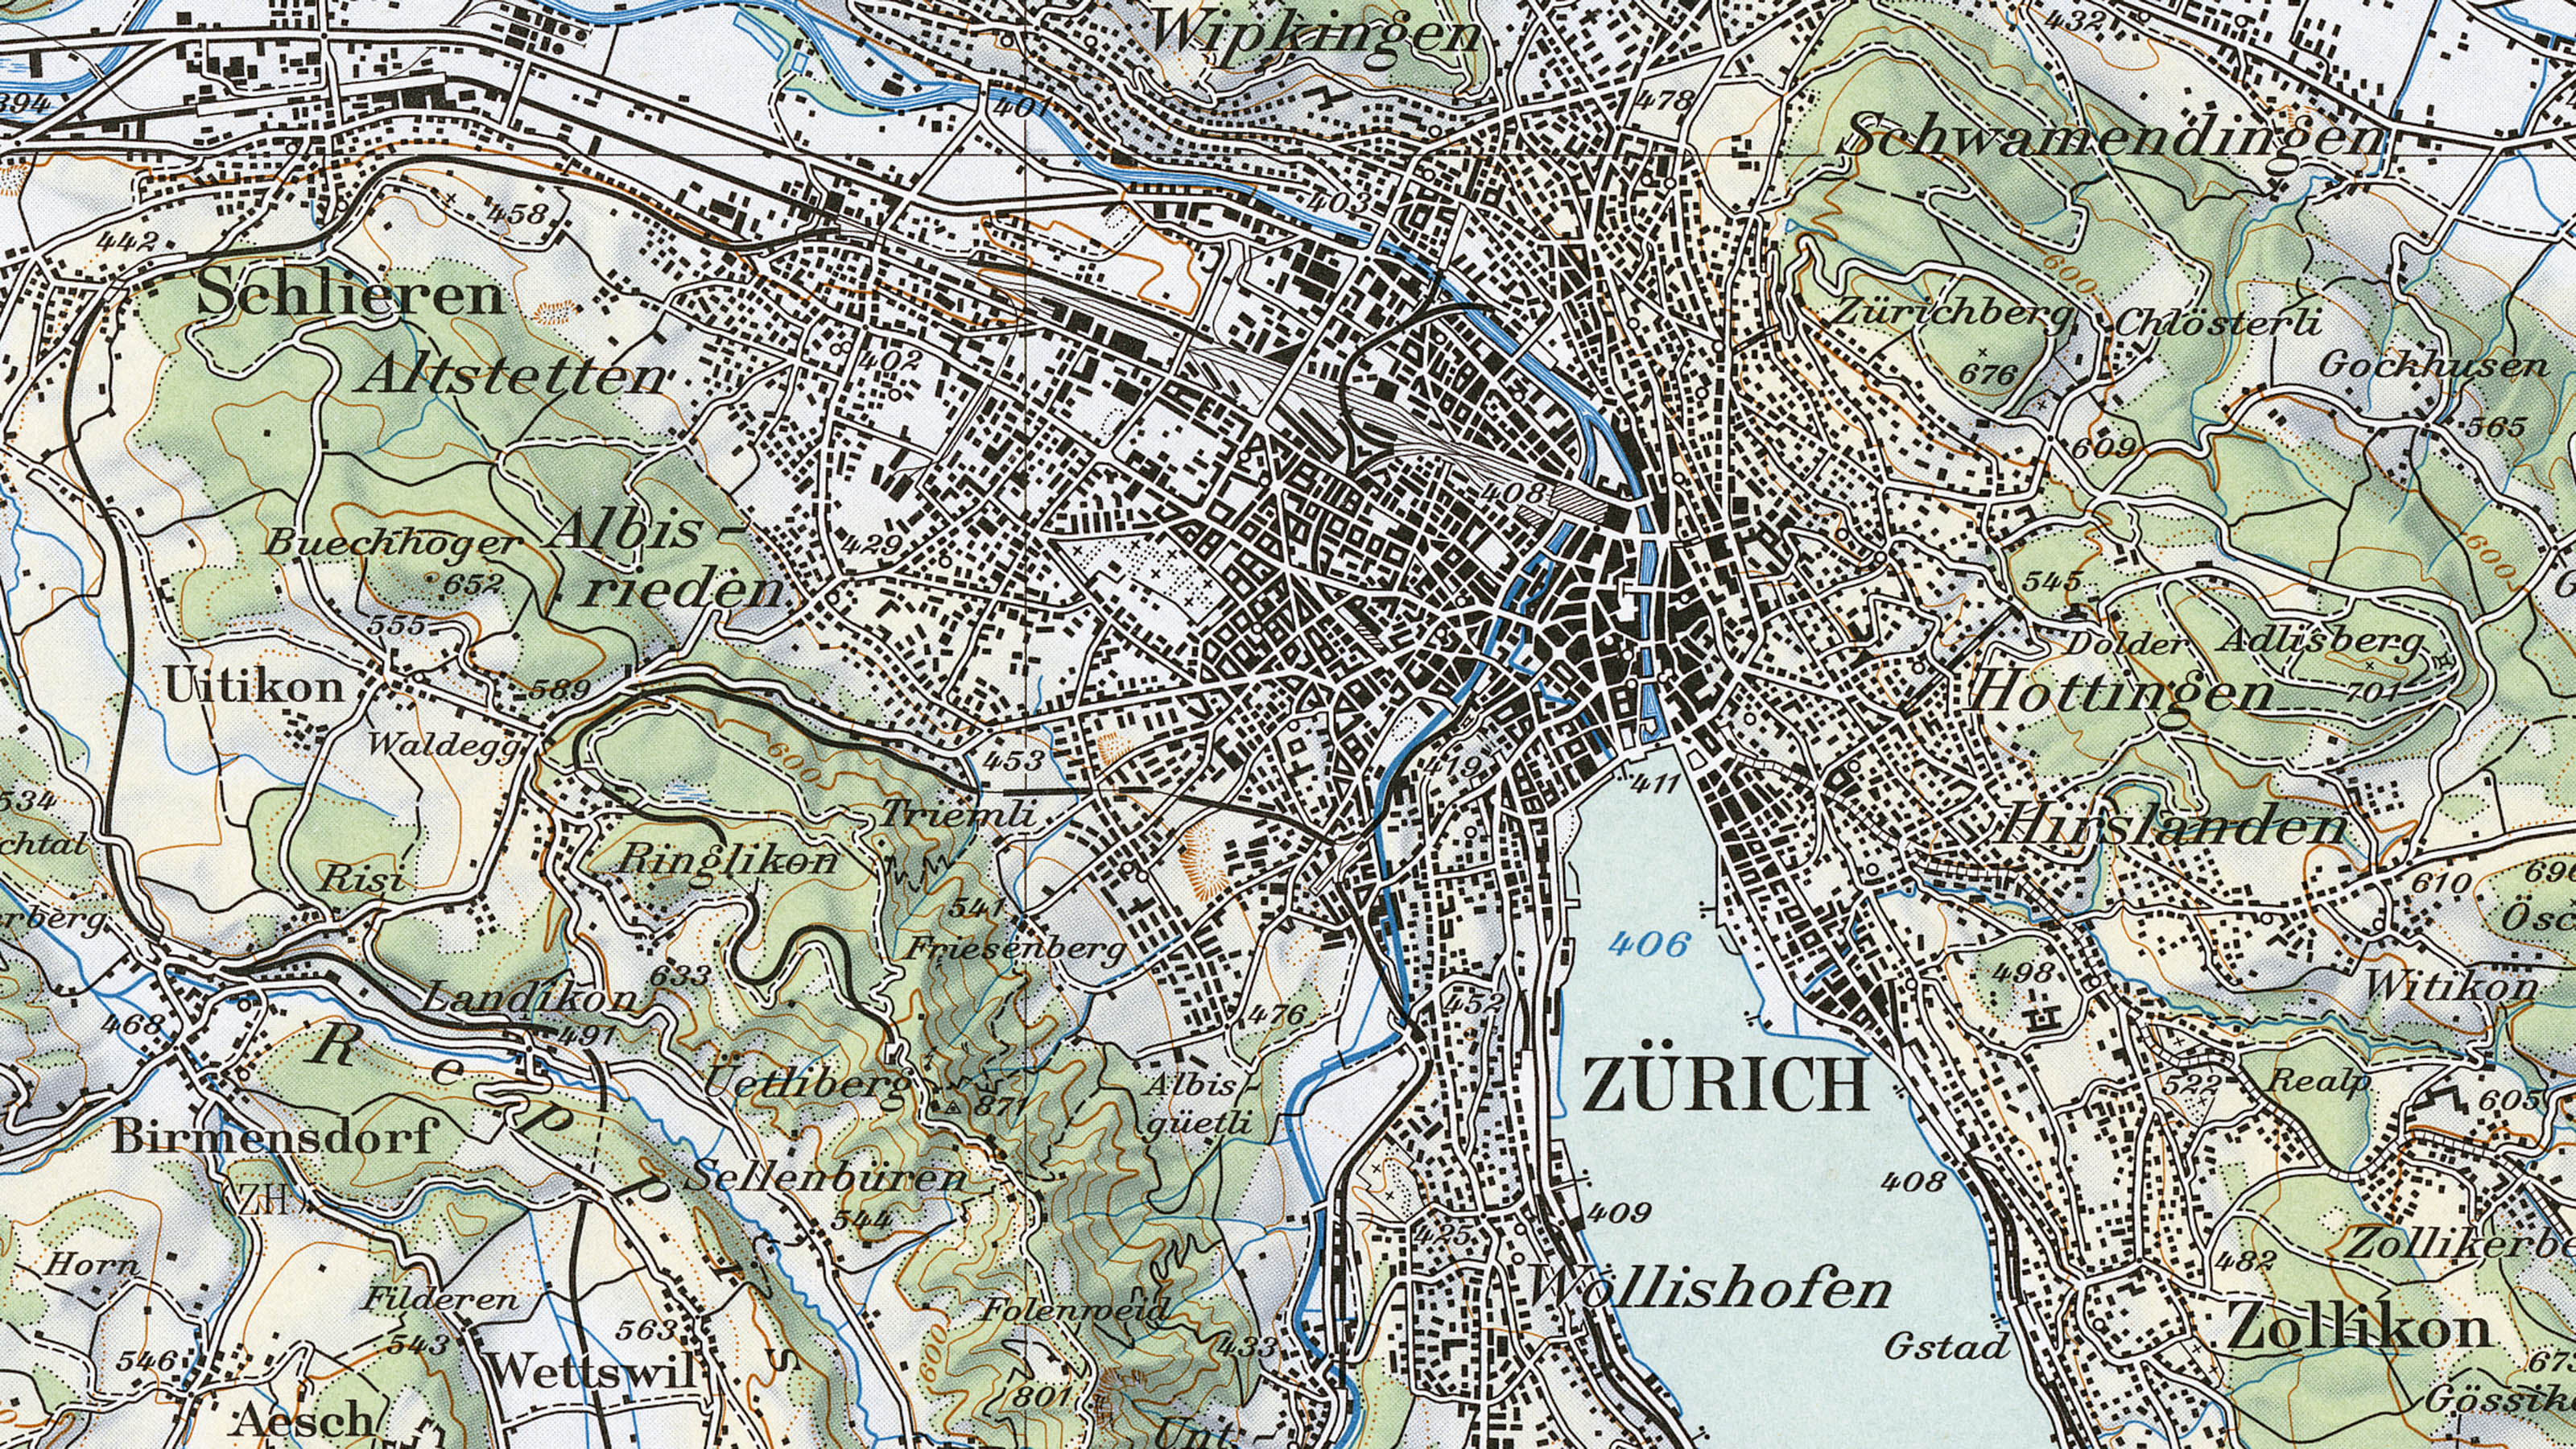 Ausschnitt der Landeskarte im Massstab 1:100 000 aus dem Jahr 1959. Der Ausschnitt zeigt das Zentrum Zürichs auf der mehrfarbigen Karte.